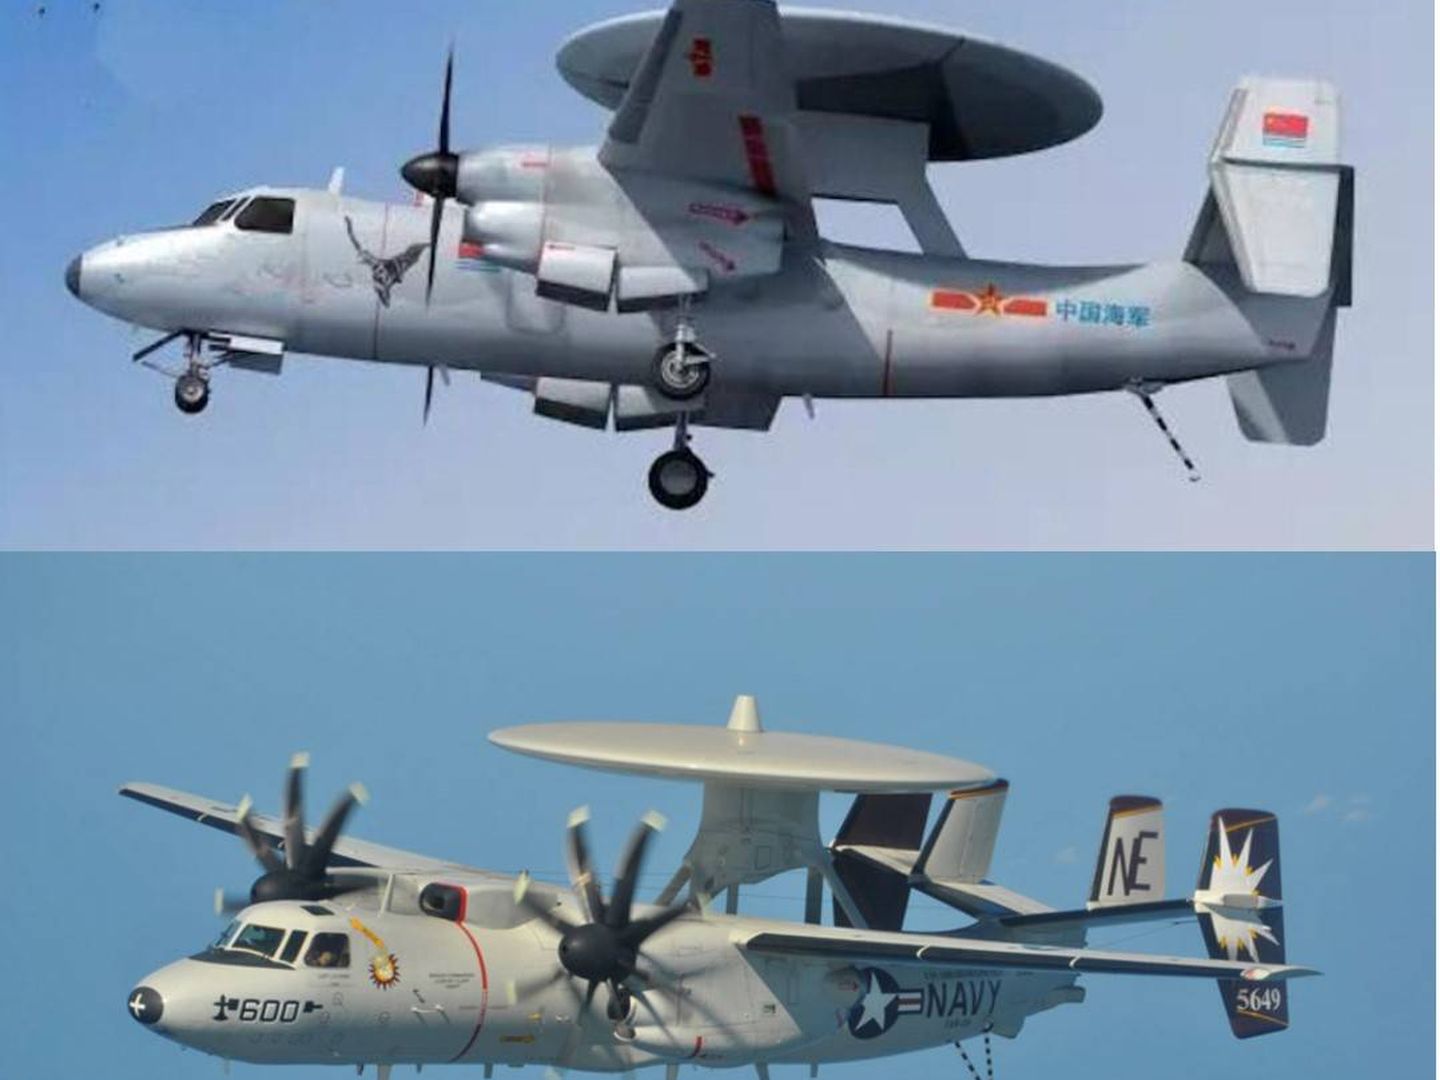 El KJ-600 chino (arriba) es uno ma?s de los casos donde se acusa a China de copiar disen?os. Abajo el E-2 norteamericano. (k.sina.cn - US Navy)